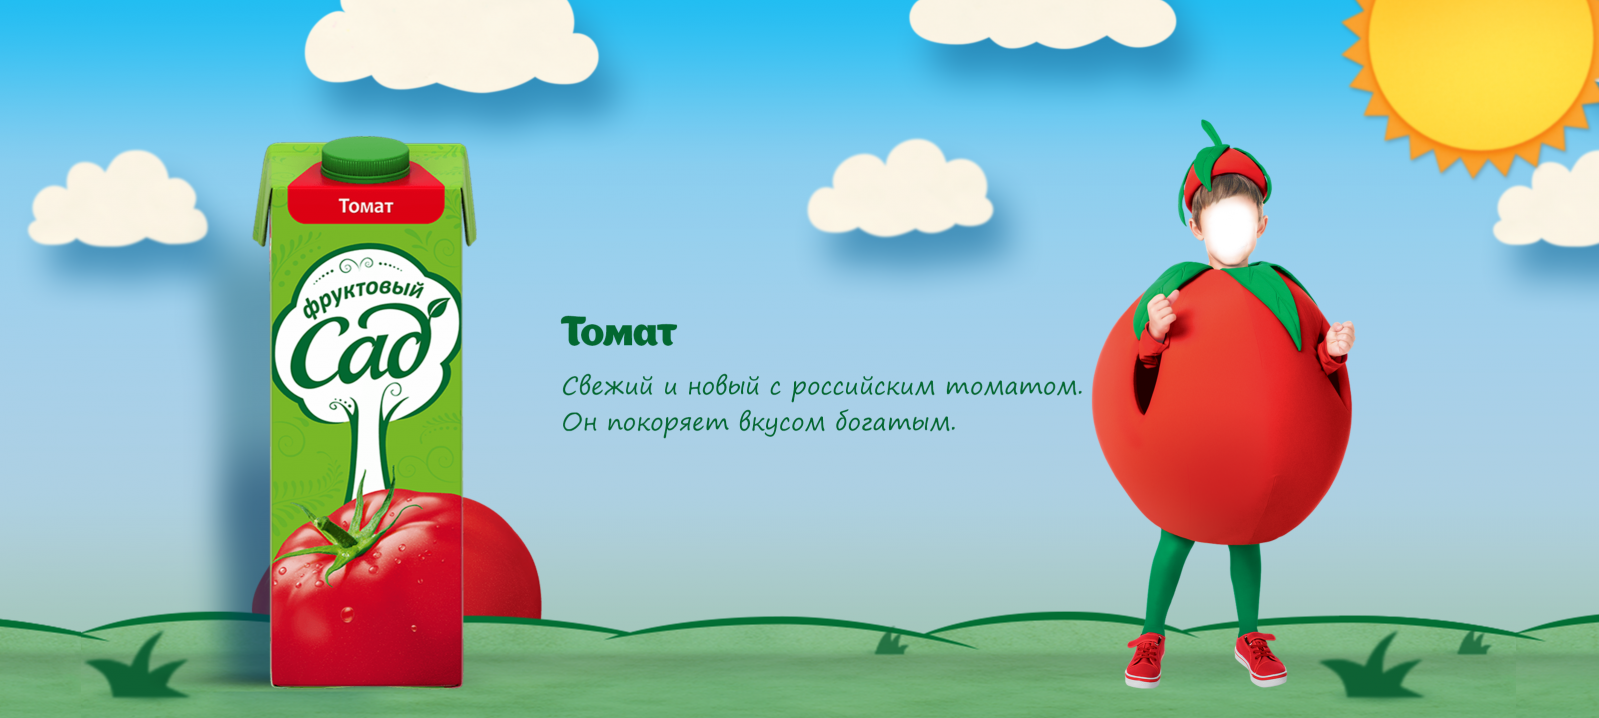 А я томат реклама. Томат фруктовый сад реклама. Реклама сока а я томат. А Я томат реклама фруктовый сад. Помидор из рекламы фруктовый сад.